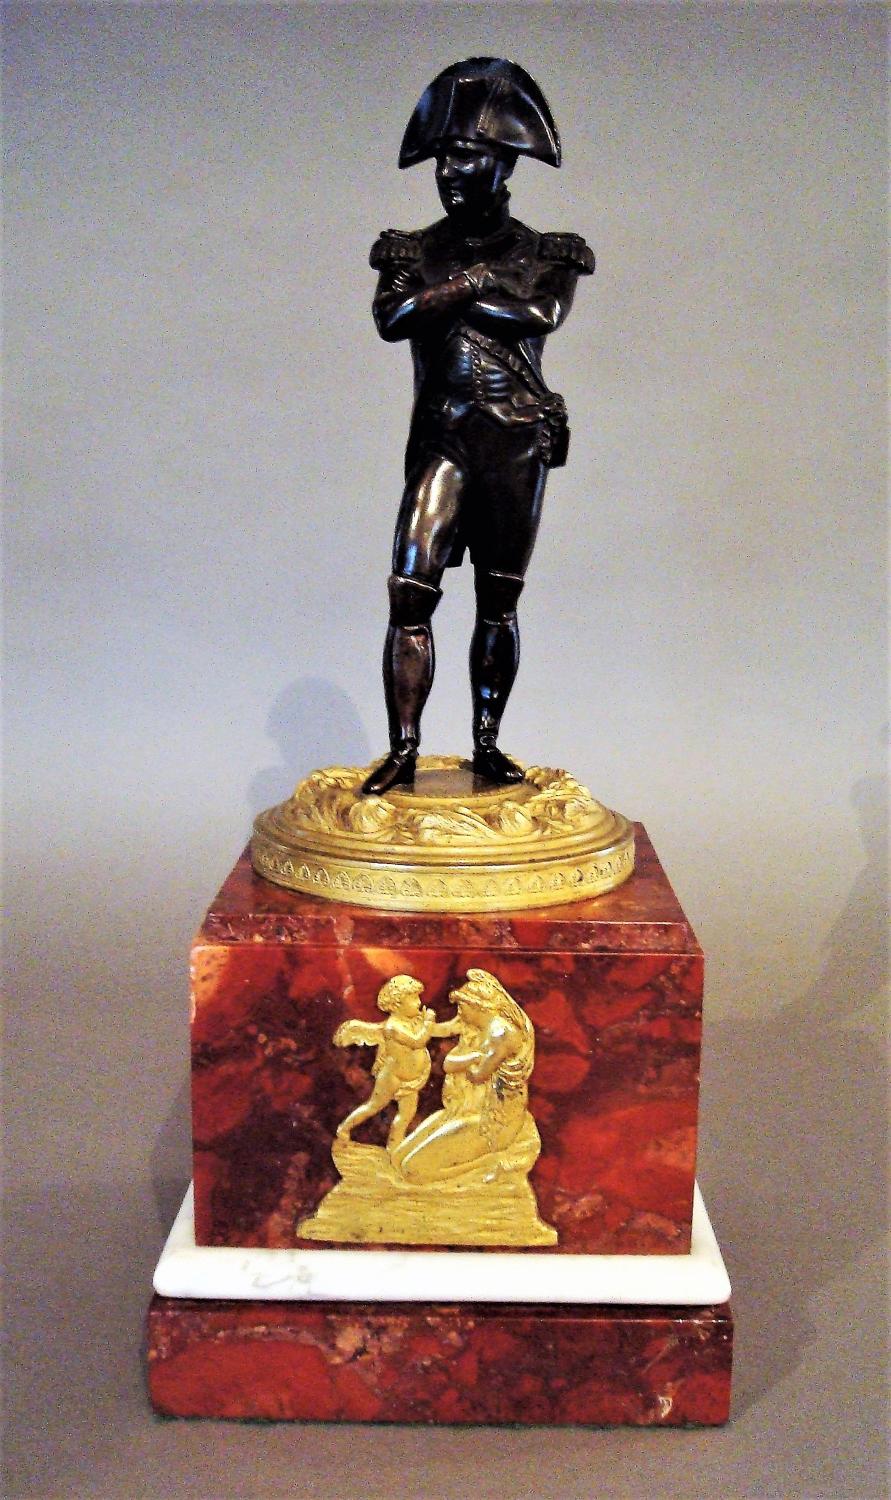 19th bronze statue of Napoleon Bonaparte